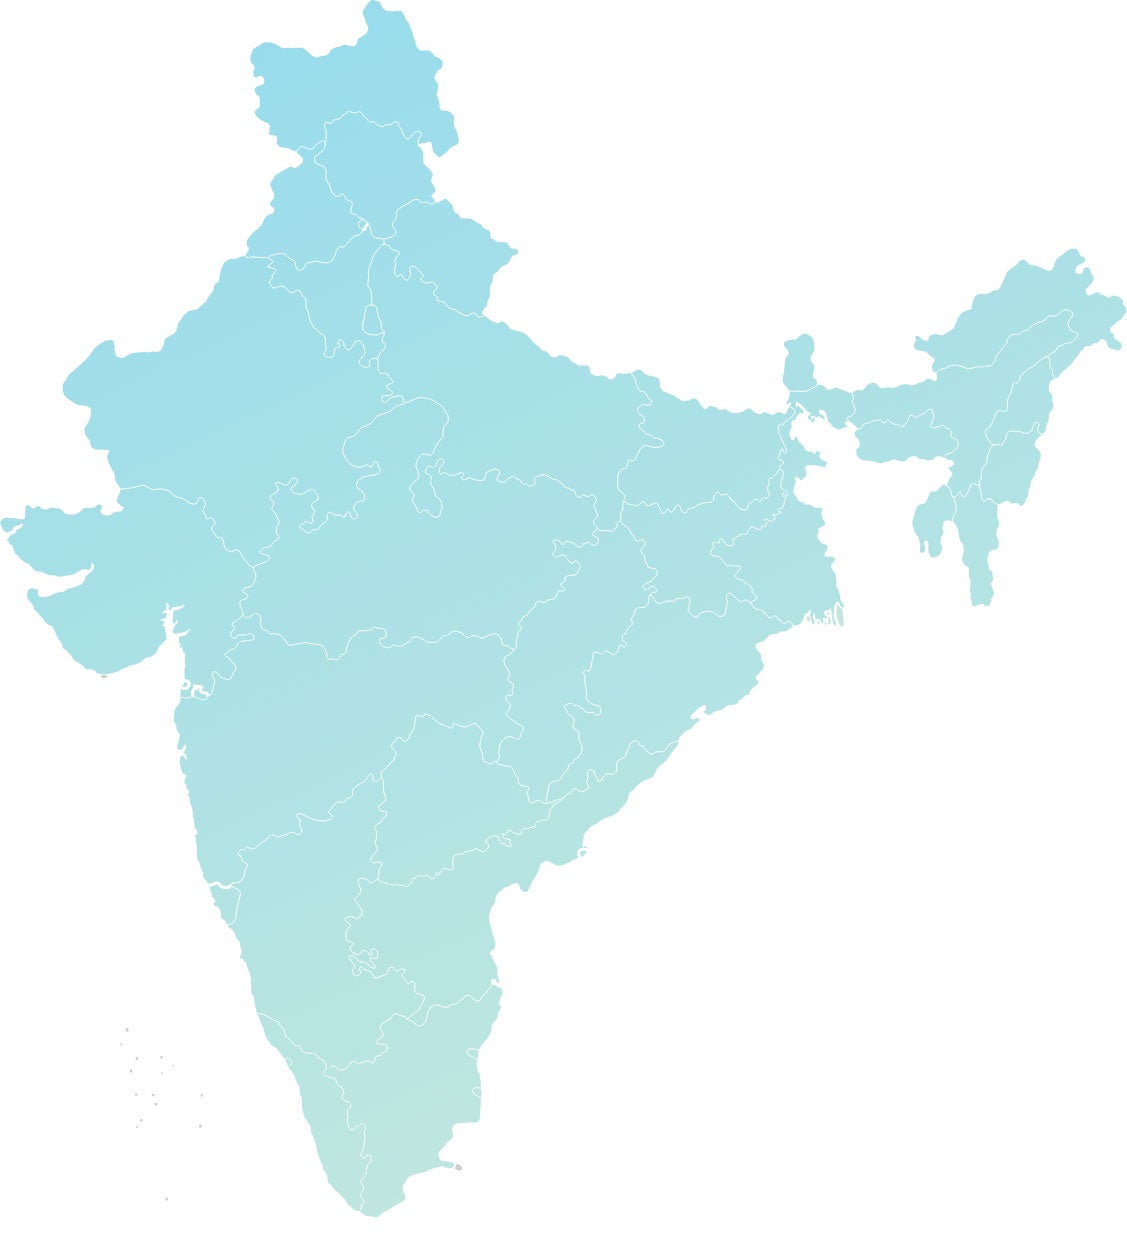 India - EDF Climate Corps